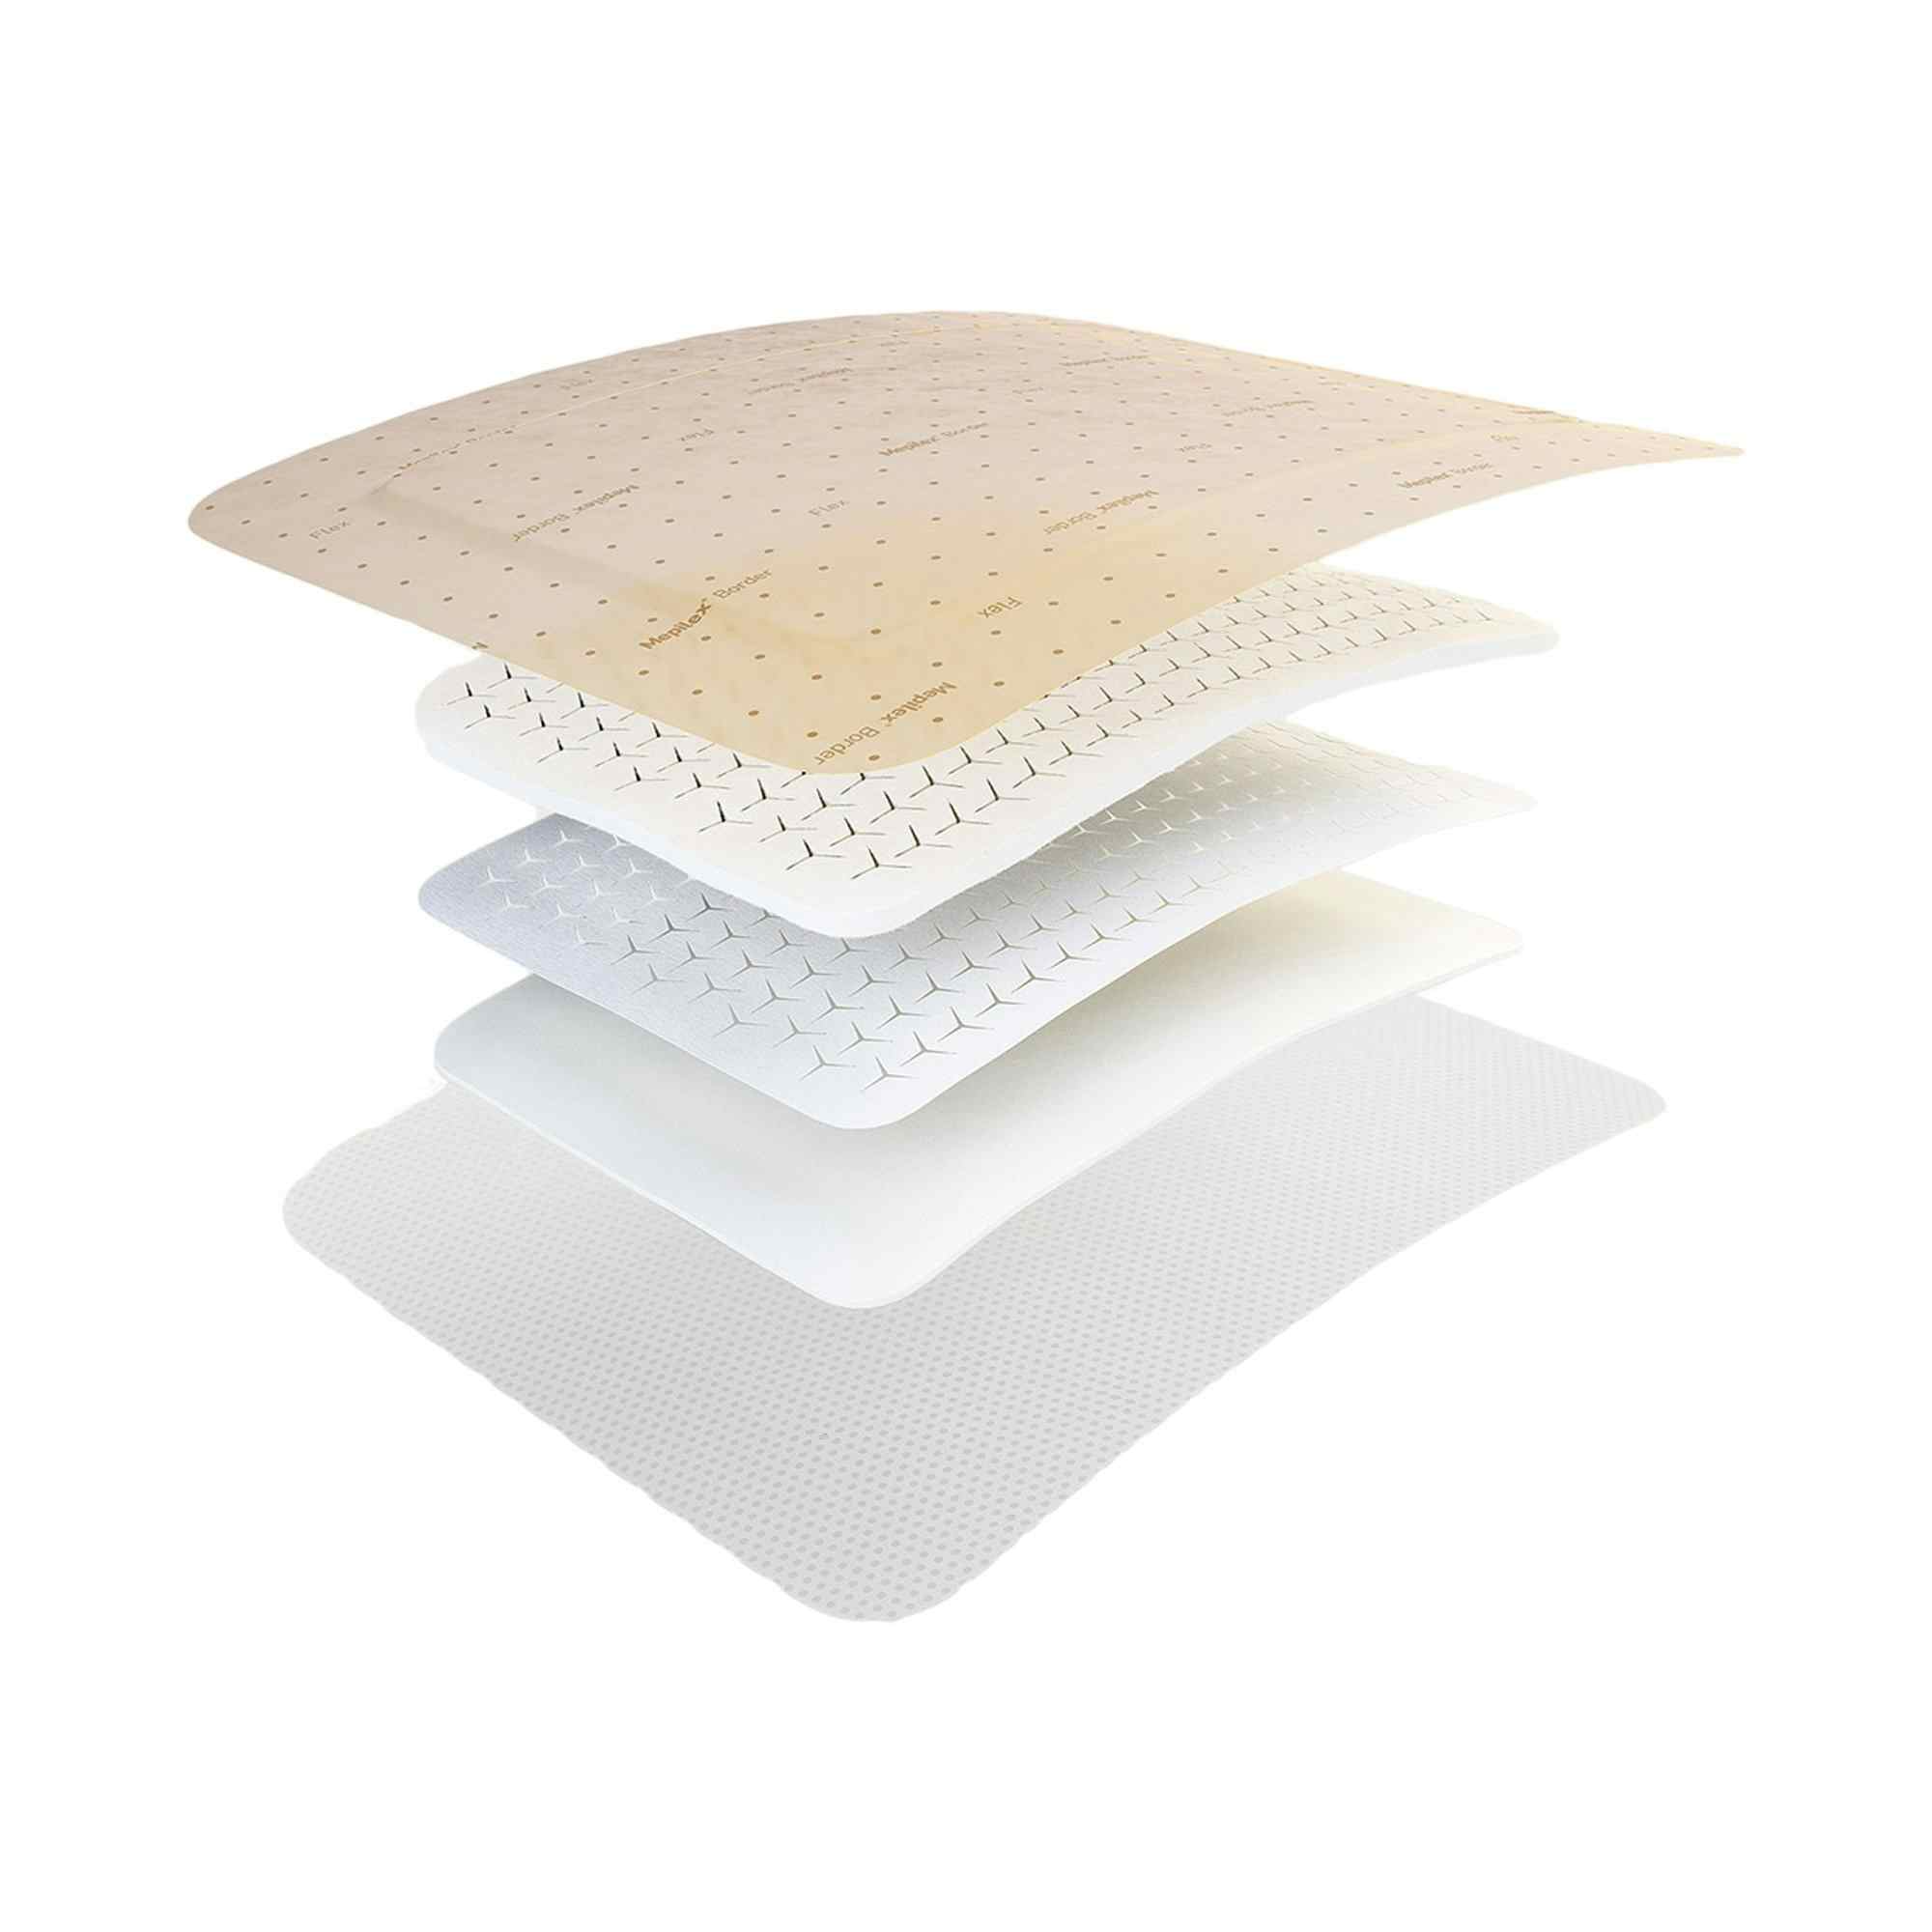 Molnlycke Mepilex Border Flex Self-Adherent Soft Silicone Foam Dressing, 6 X 6", 595400, Box of 5